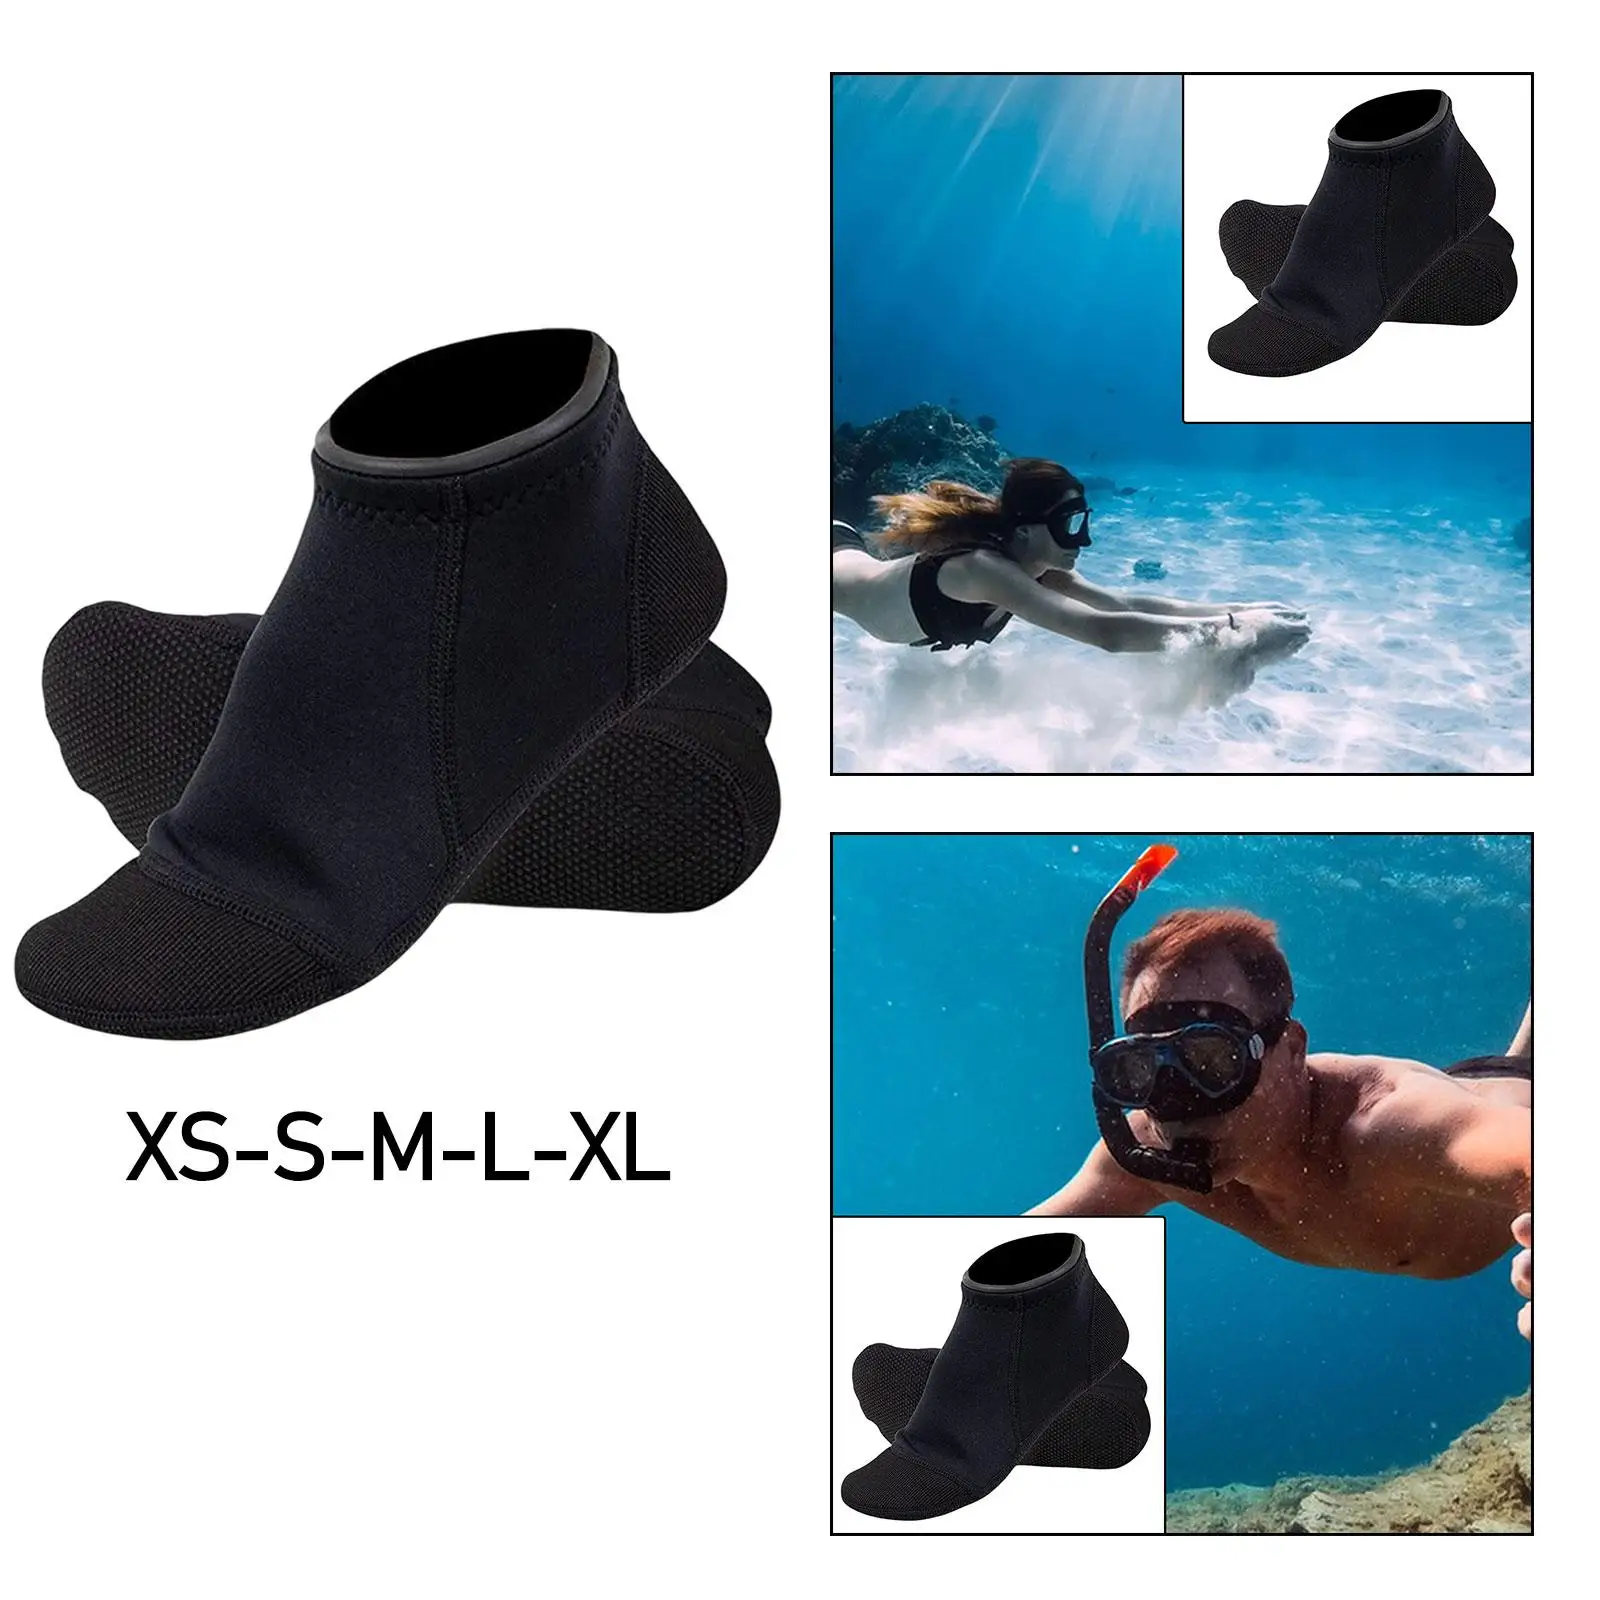 Pair of 3mm Neoprene Socks Snorkeling Scratch Proof Nonslip Surfing Booties Scuba Diving Socks for Outdoor Activities Rafting